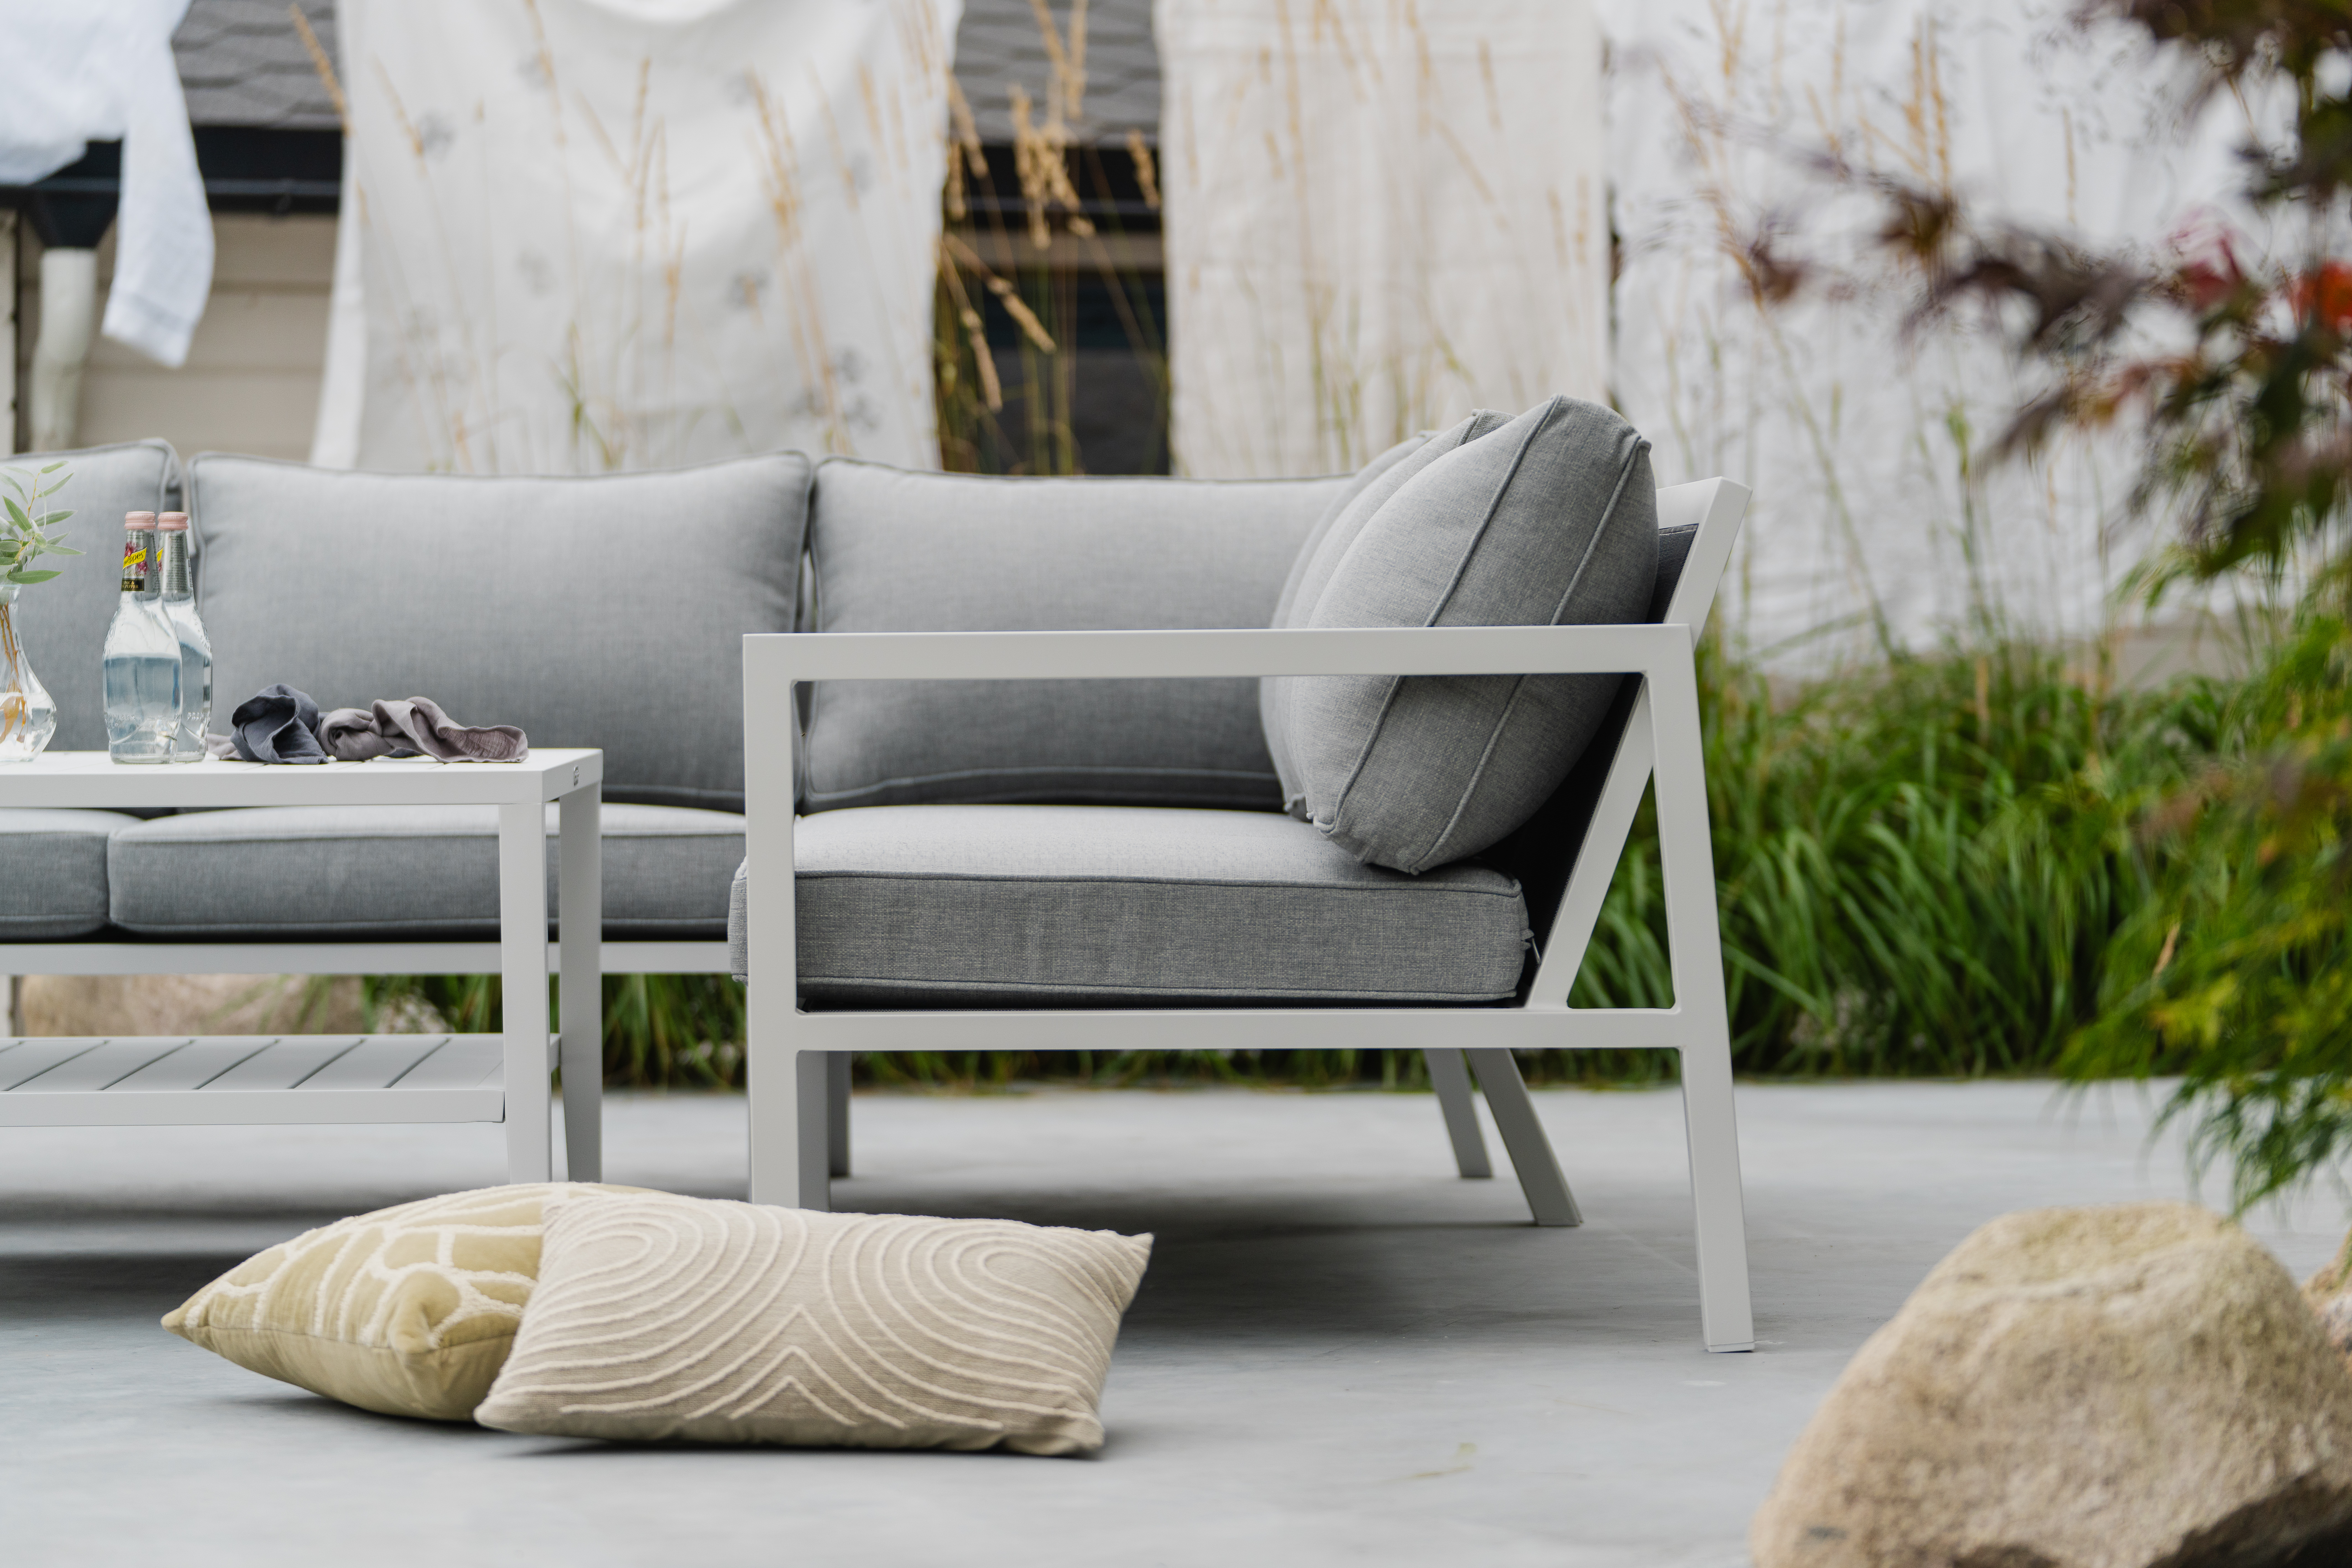 Belfort er en moderne loungemøbel gruppe med svært god sittekomfort. Den finnes i matt hvit eller matt sort aluminium